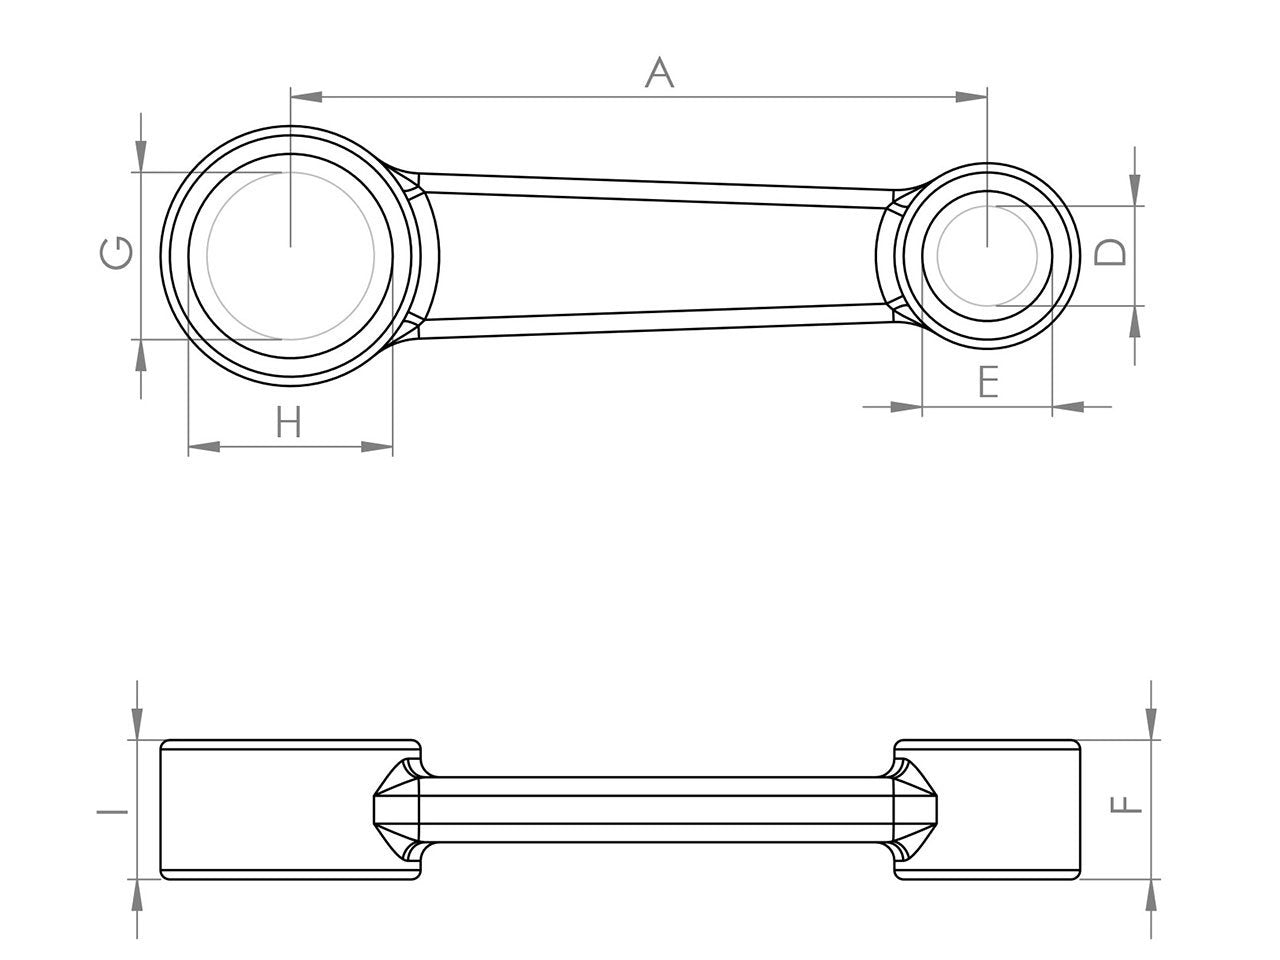 Zeichnung Barikit Pleuel für einen Peugeot Jet Force Roller Motor mit Bemaßung.